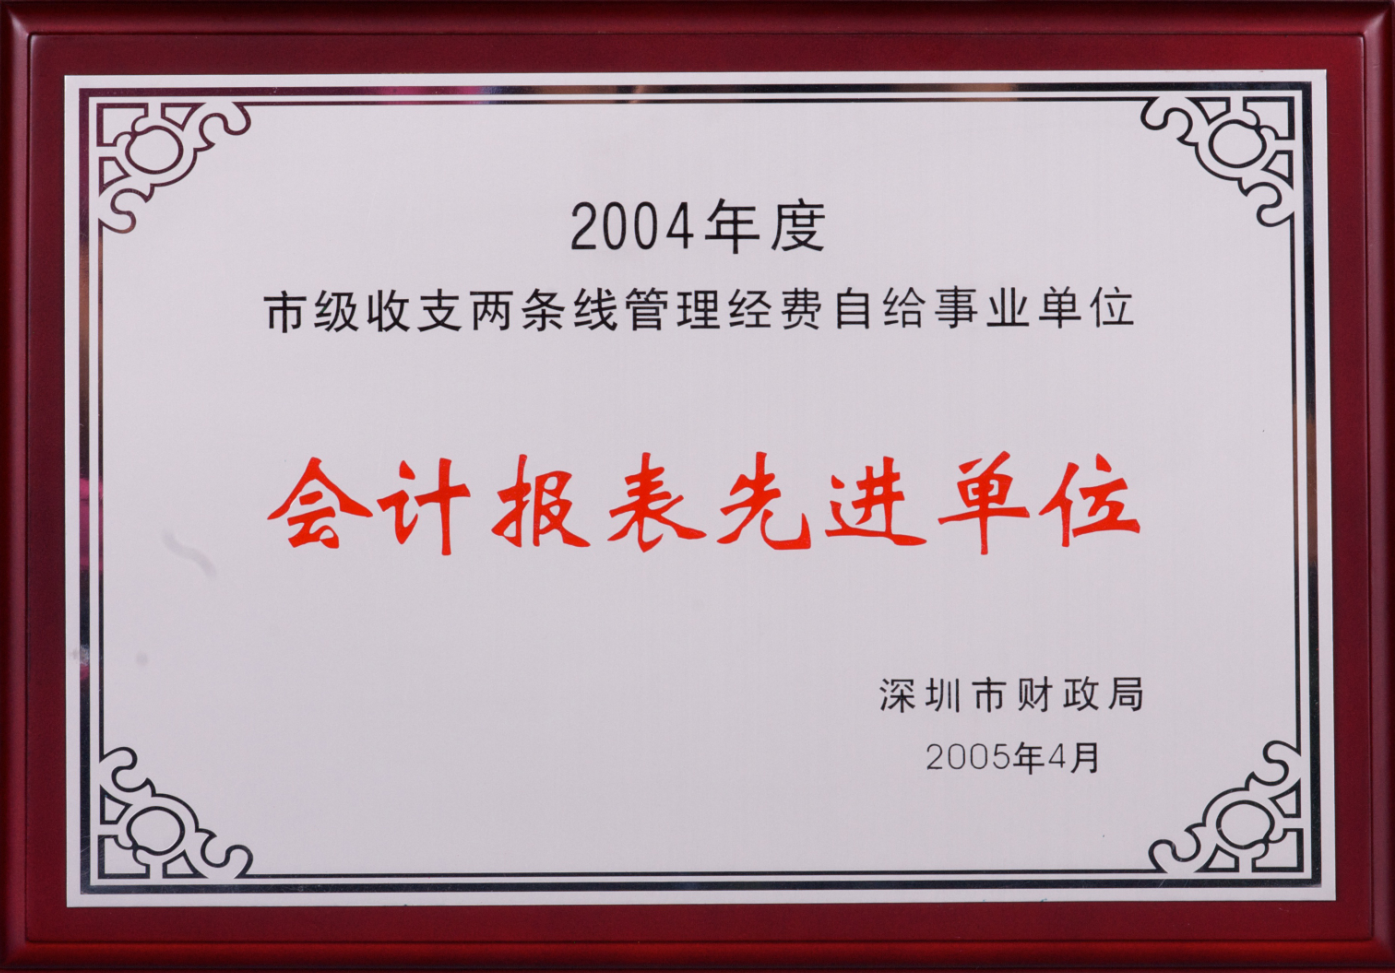 深圳市财政局—2004年度会计报表先进单位